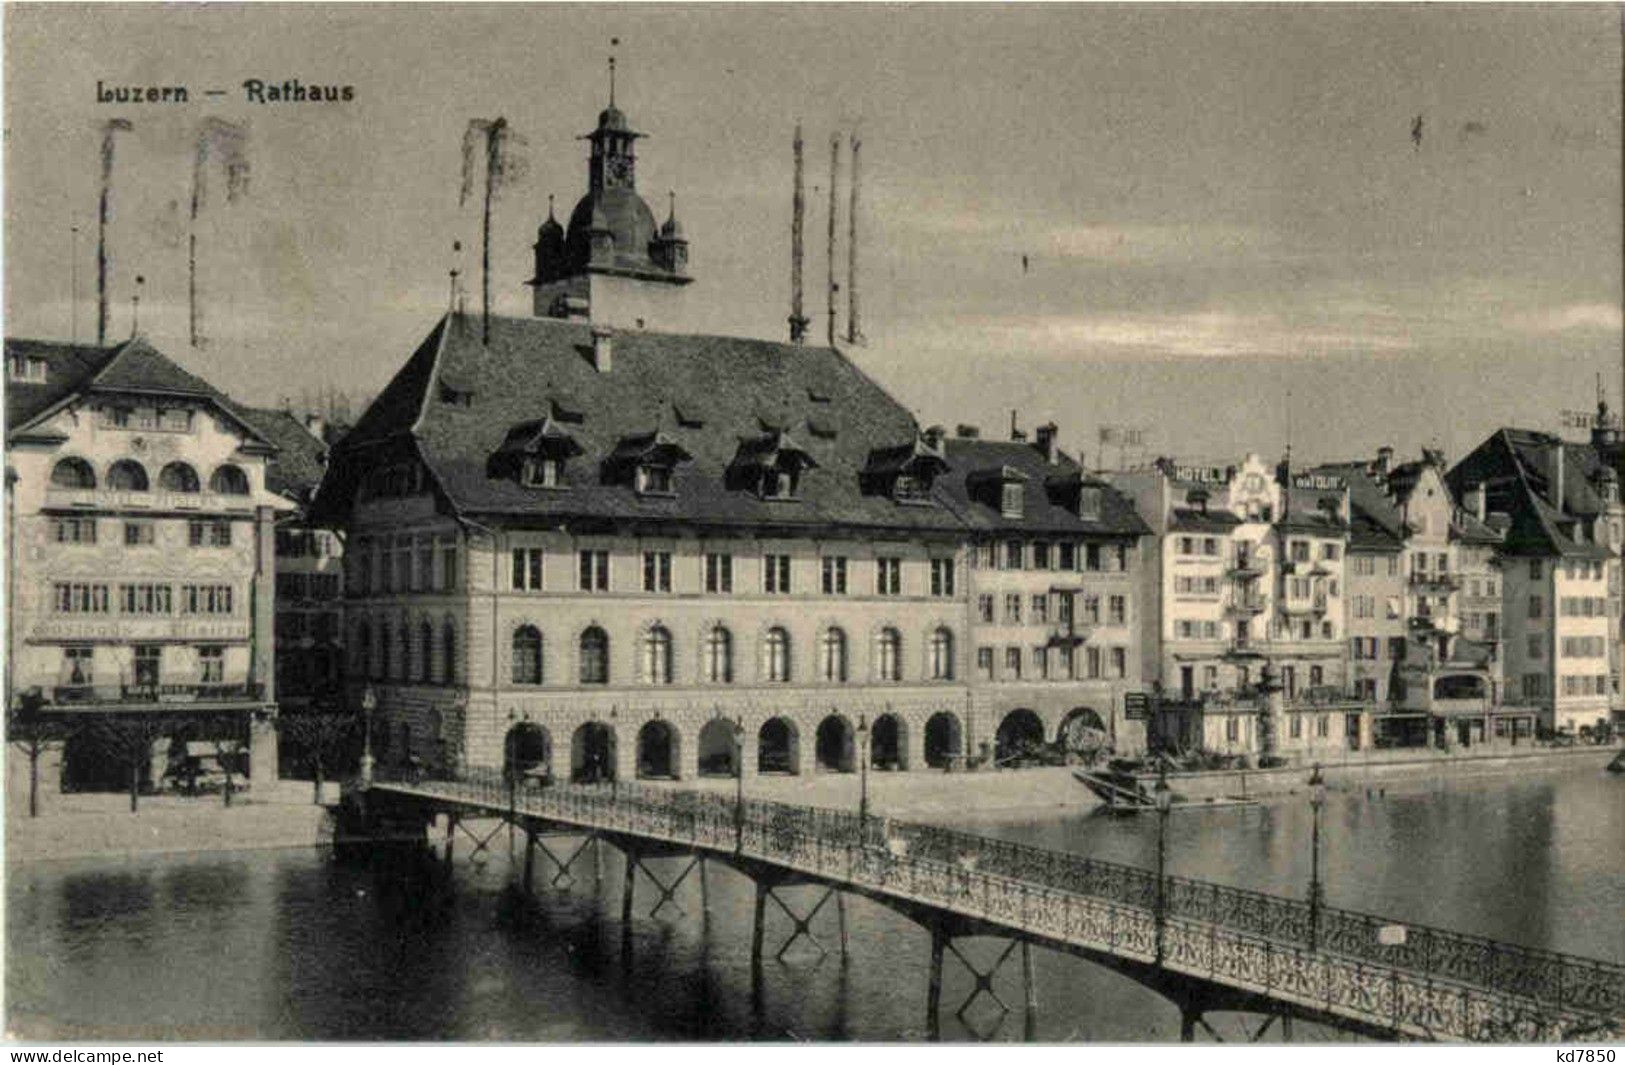 Luzern - Rathaus - Luzern